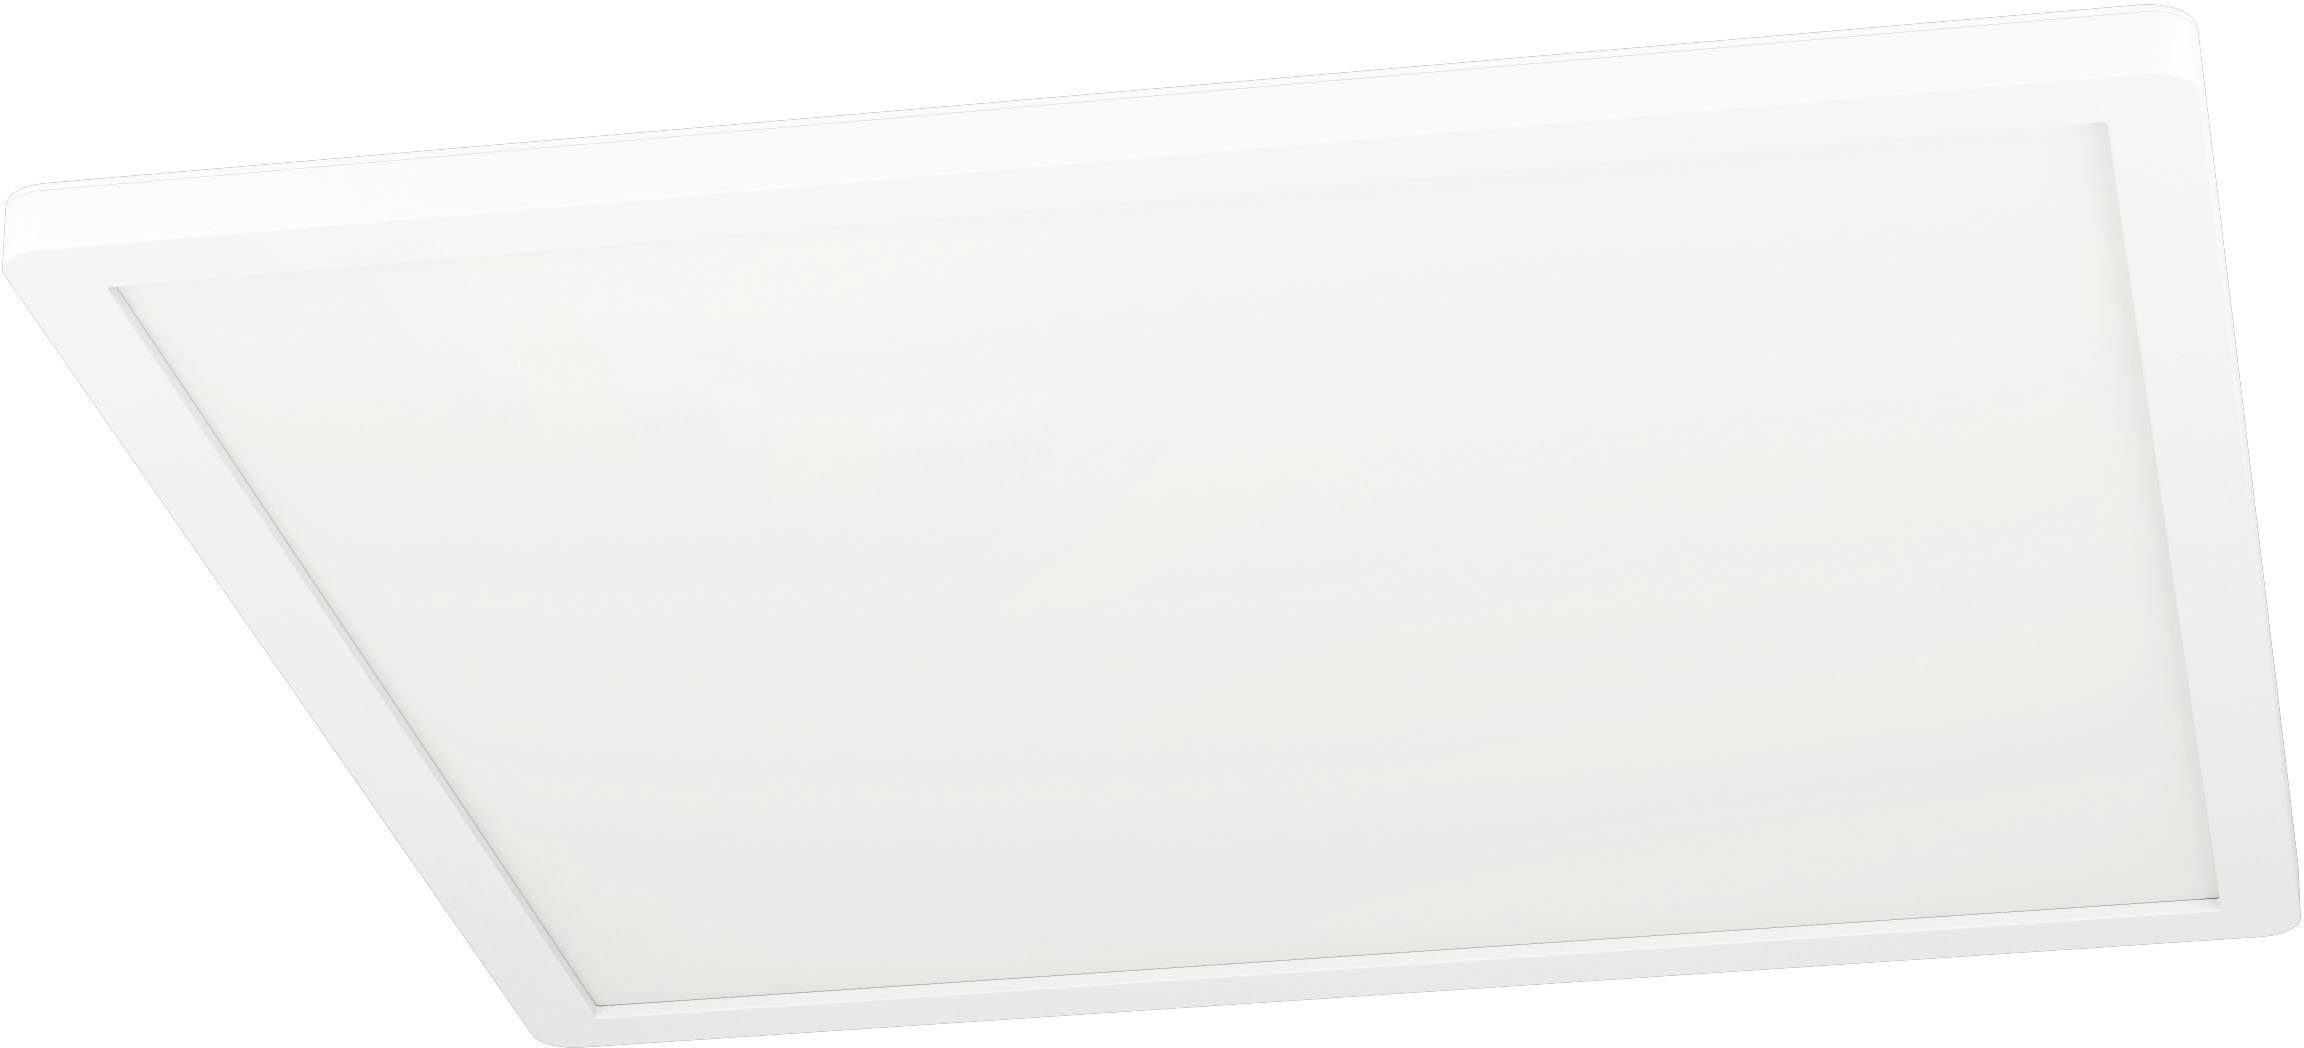 EGLO Deckenleuchte ROVITO-Z, LED fest integriert, warmweiß - kaltweiß,  Deckenleuchte in weiß aus Kunststoff - 16,5W - warmweiß - kaltweiß,  Deckenleuchte ROVITO-Z überzeugt durch Qualität und Langlebigkeit